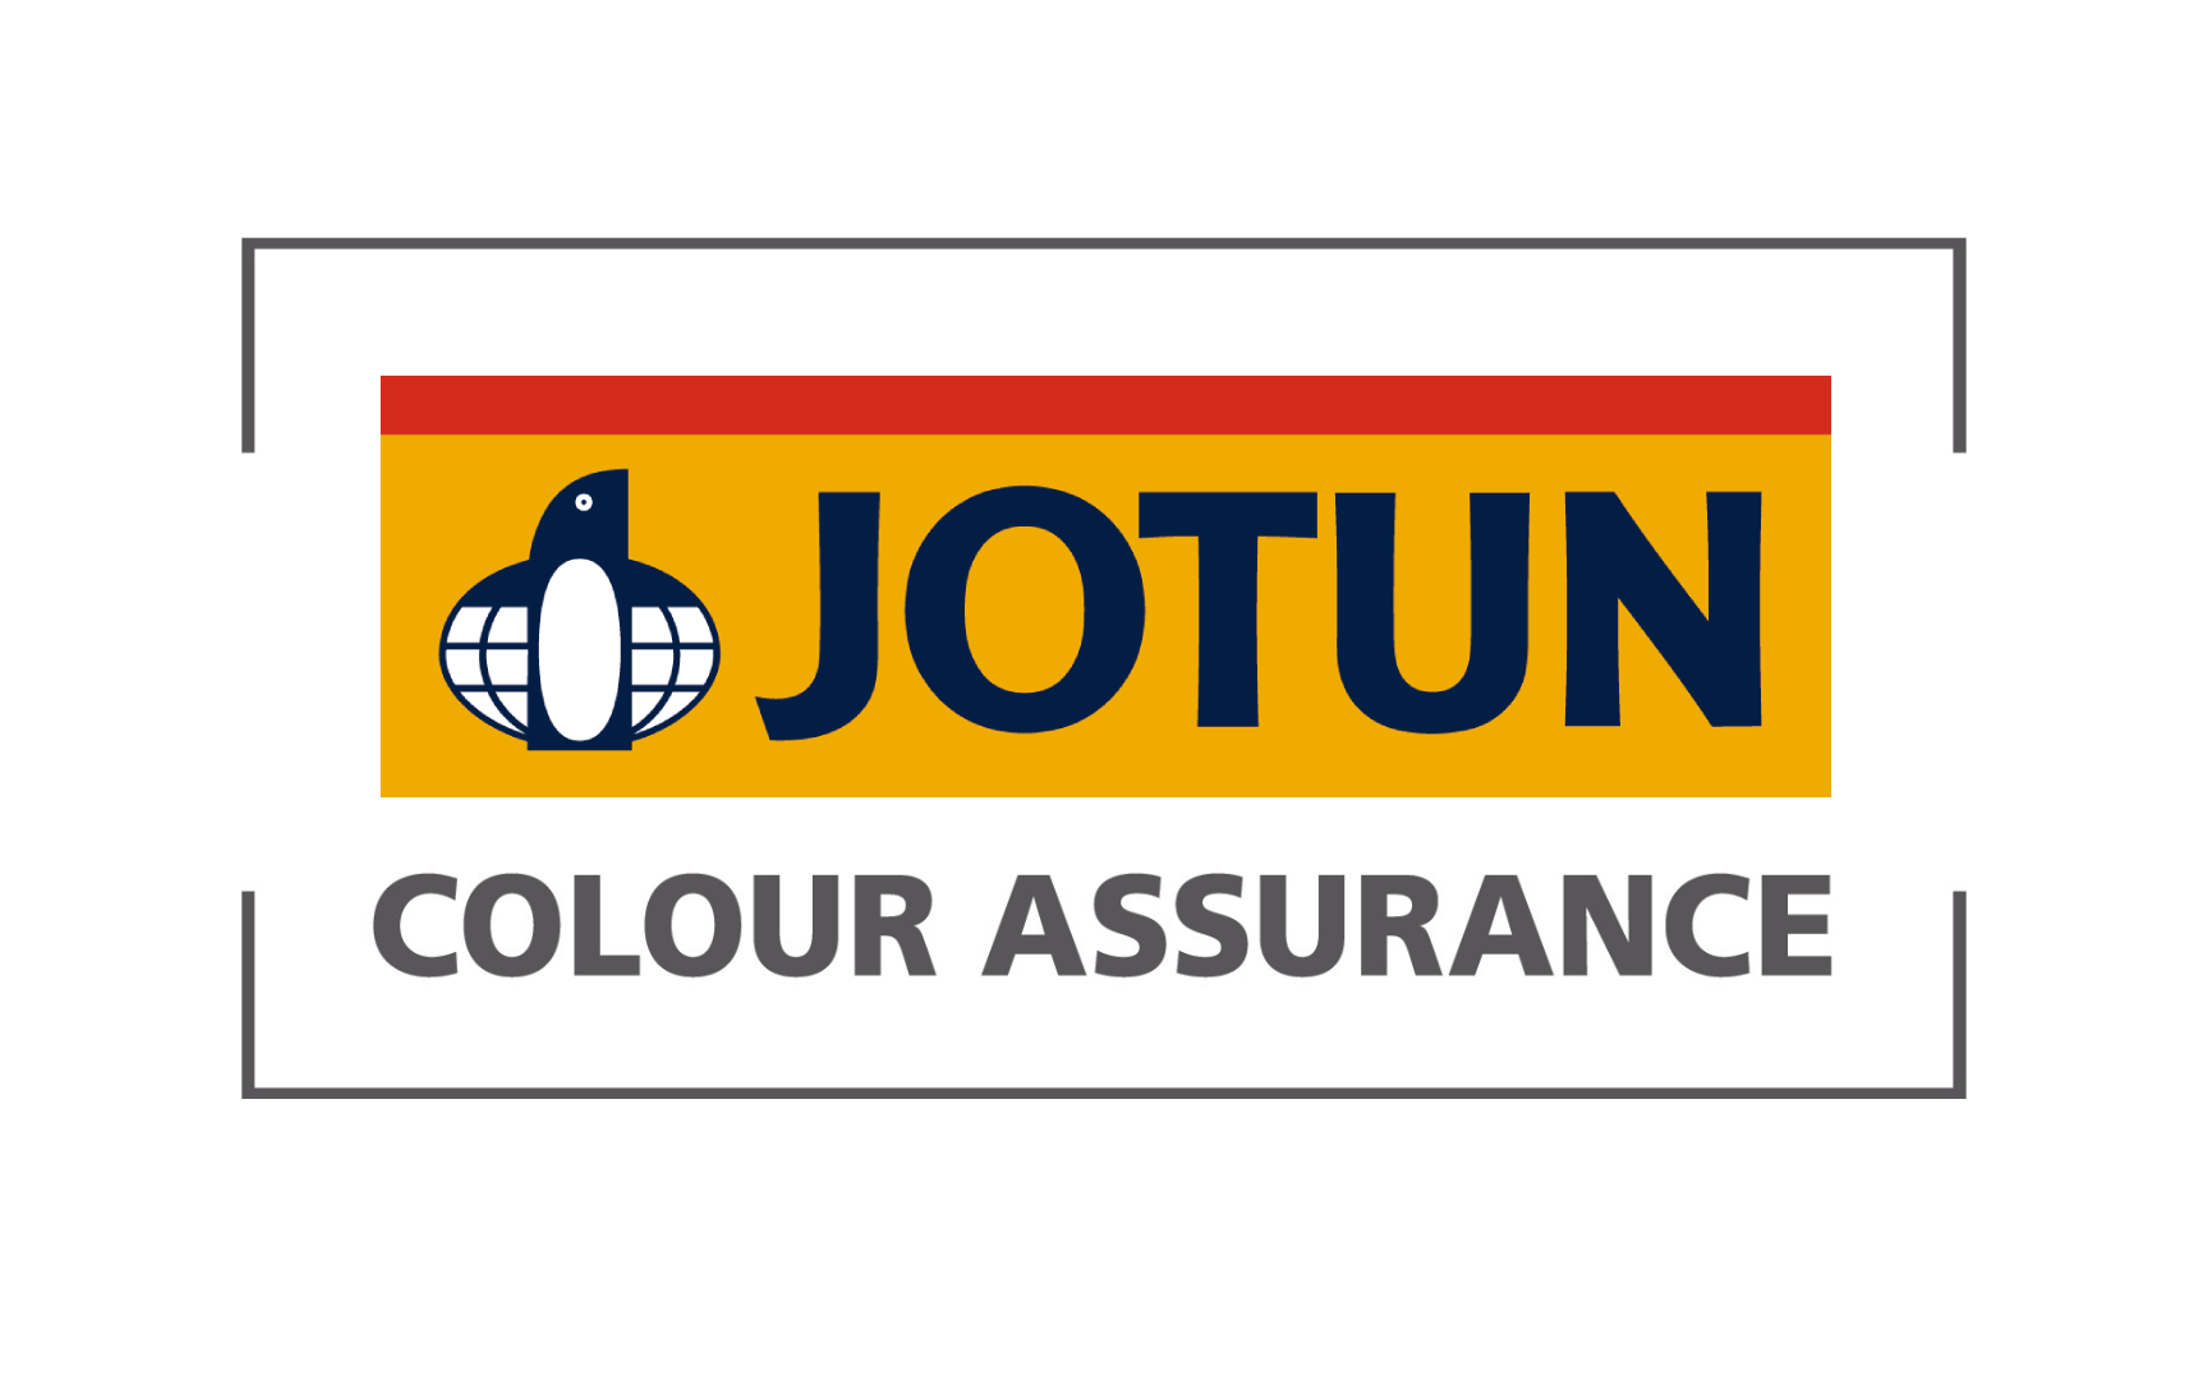 Colour assurance